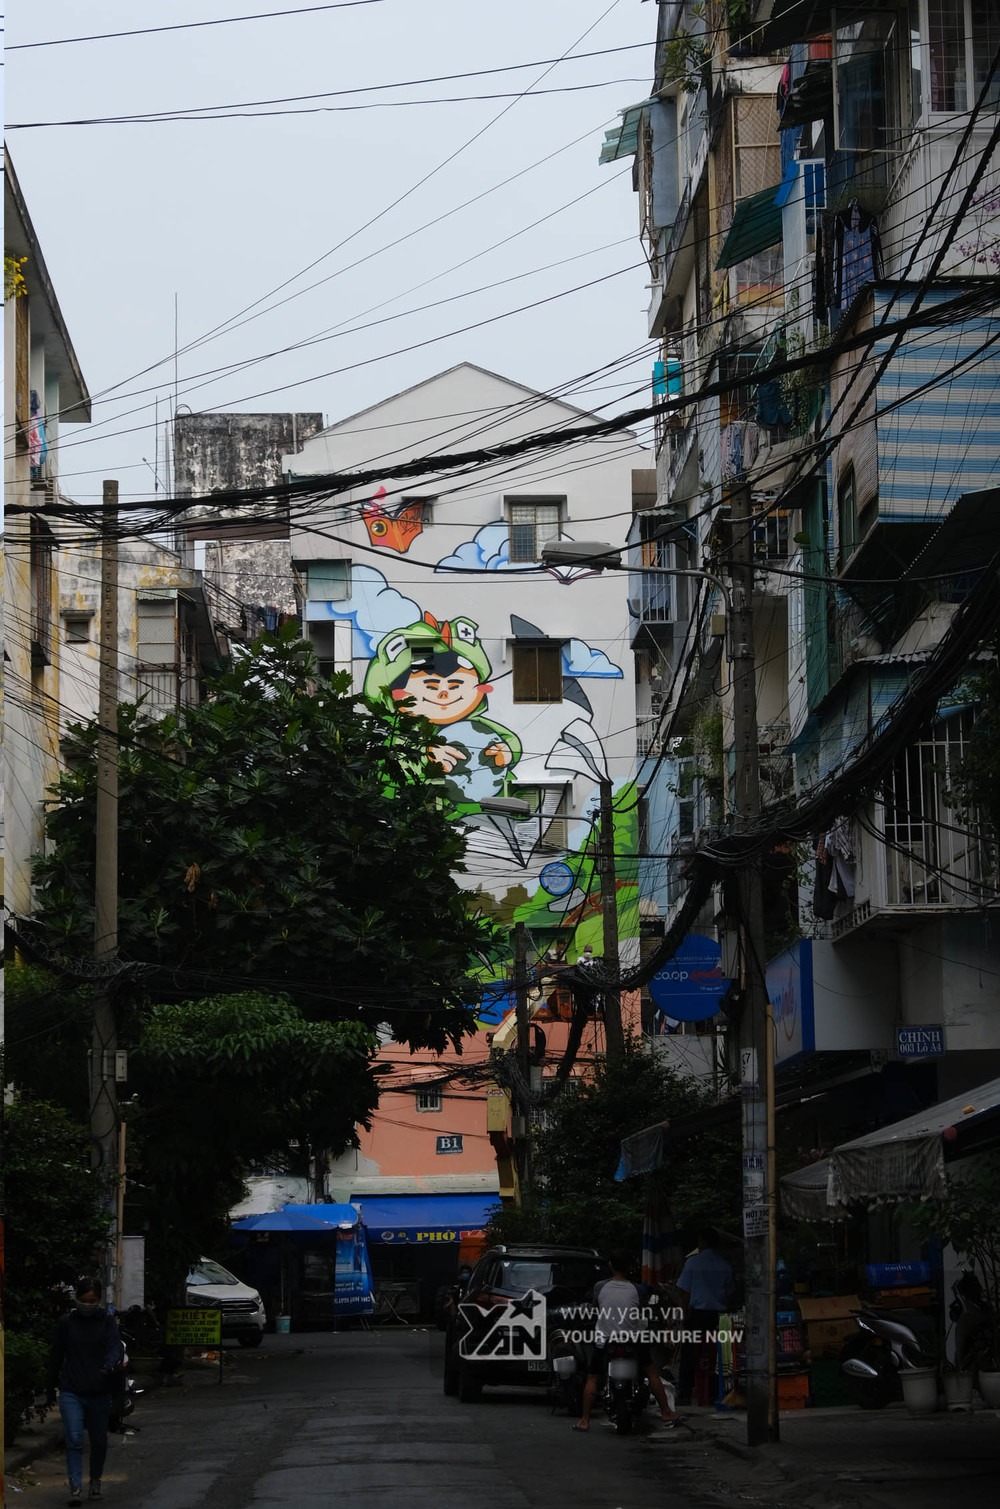  
Con hẻm dẫn vào khu vực bức tranh siêu lớn trên đường Nguyễn Đình Chiểu.